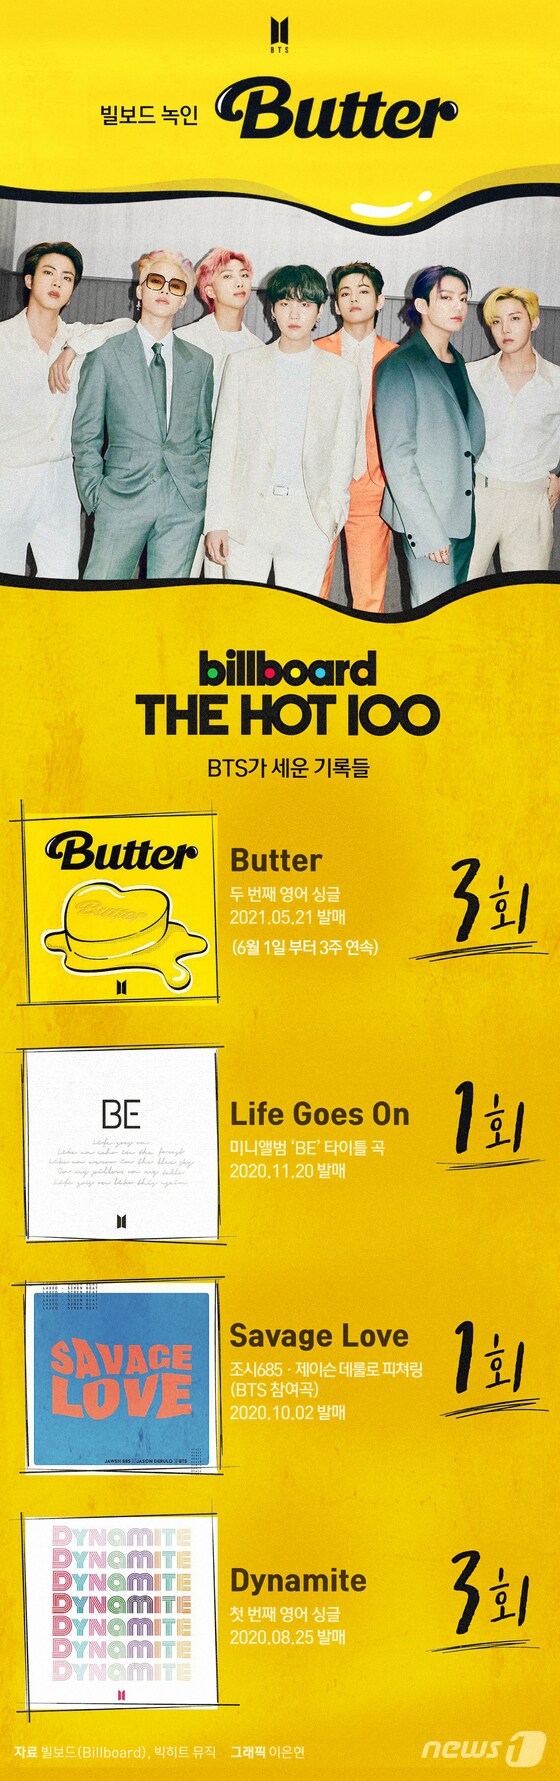 [그래픽뉴스] 빌보드 녹인 '버터' 3주 연속 1위…BTS가 세운 기록들